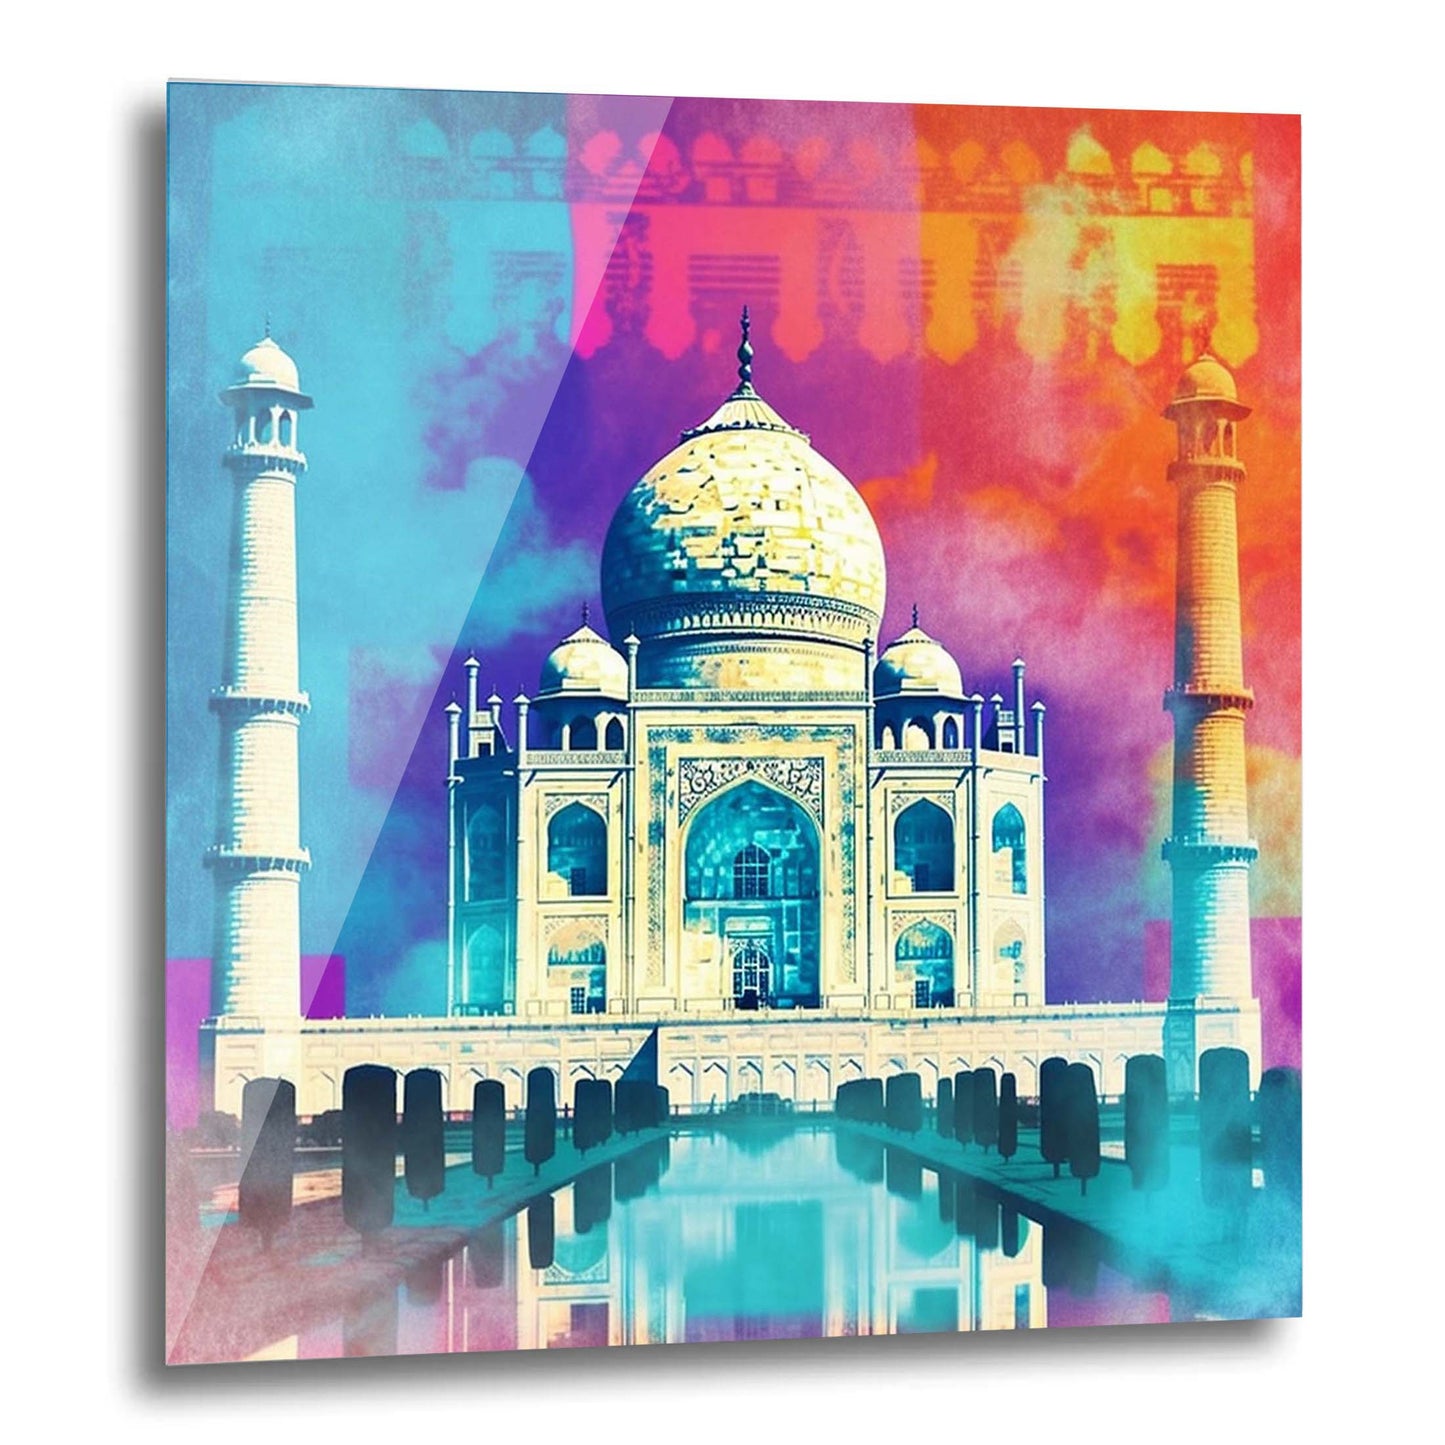 Taj Mahal - Wandbild in der Stilrichtung der Pop-Art